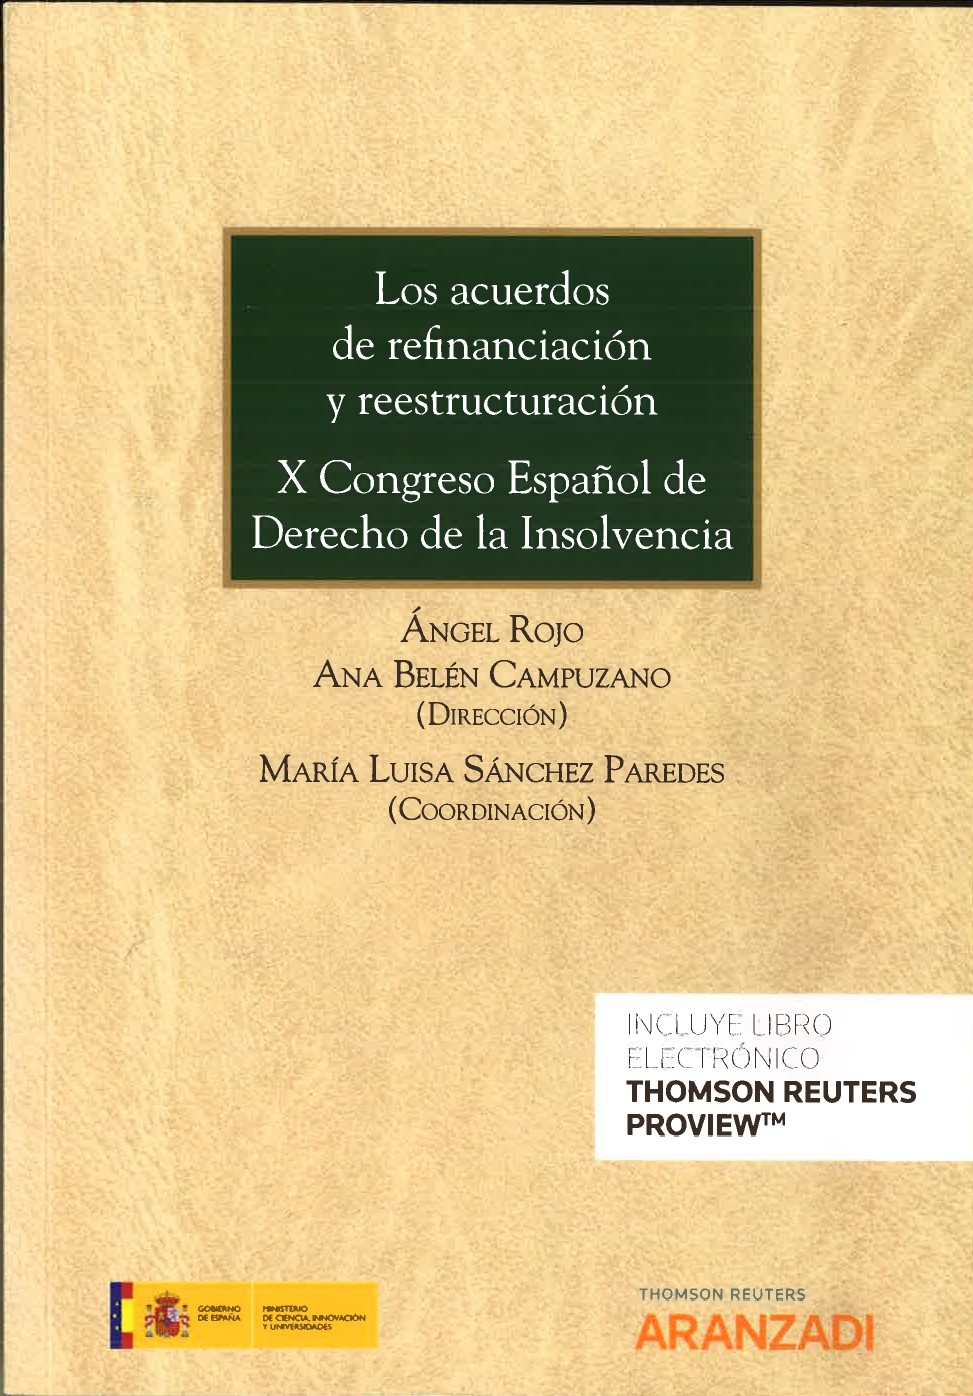 Imagen de portada del libro Los acuerdos de refinanciación y reestructuración